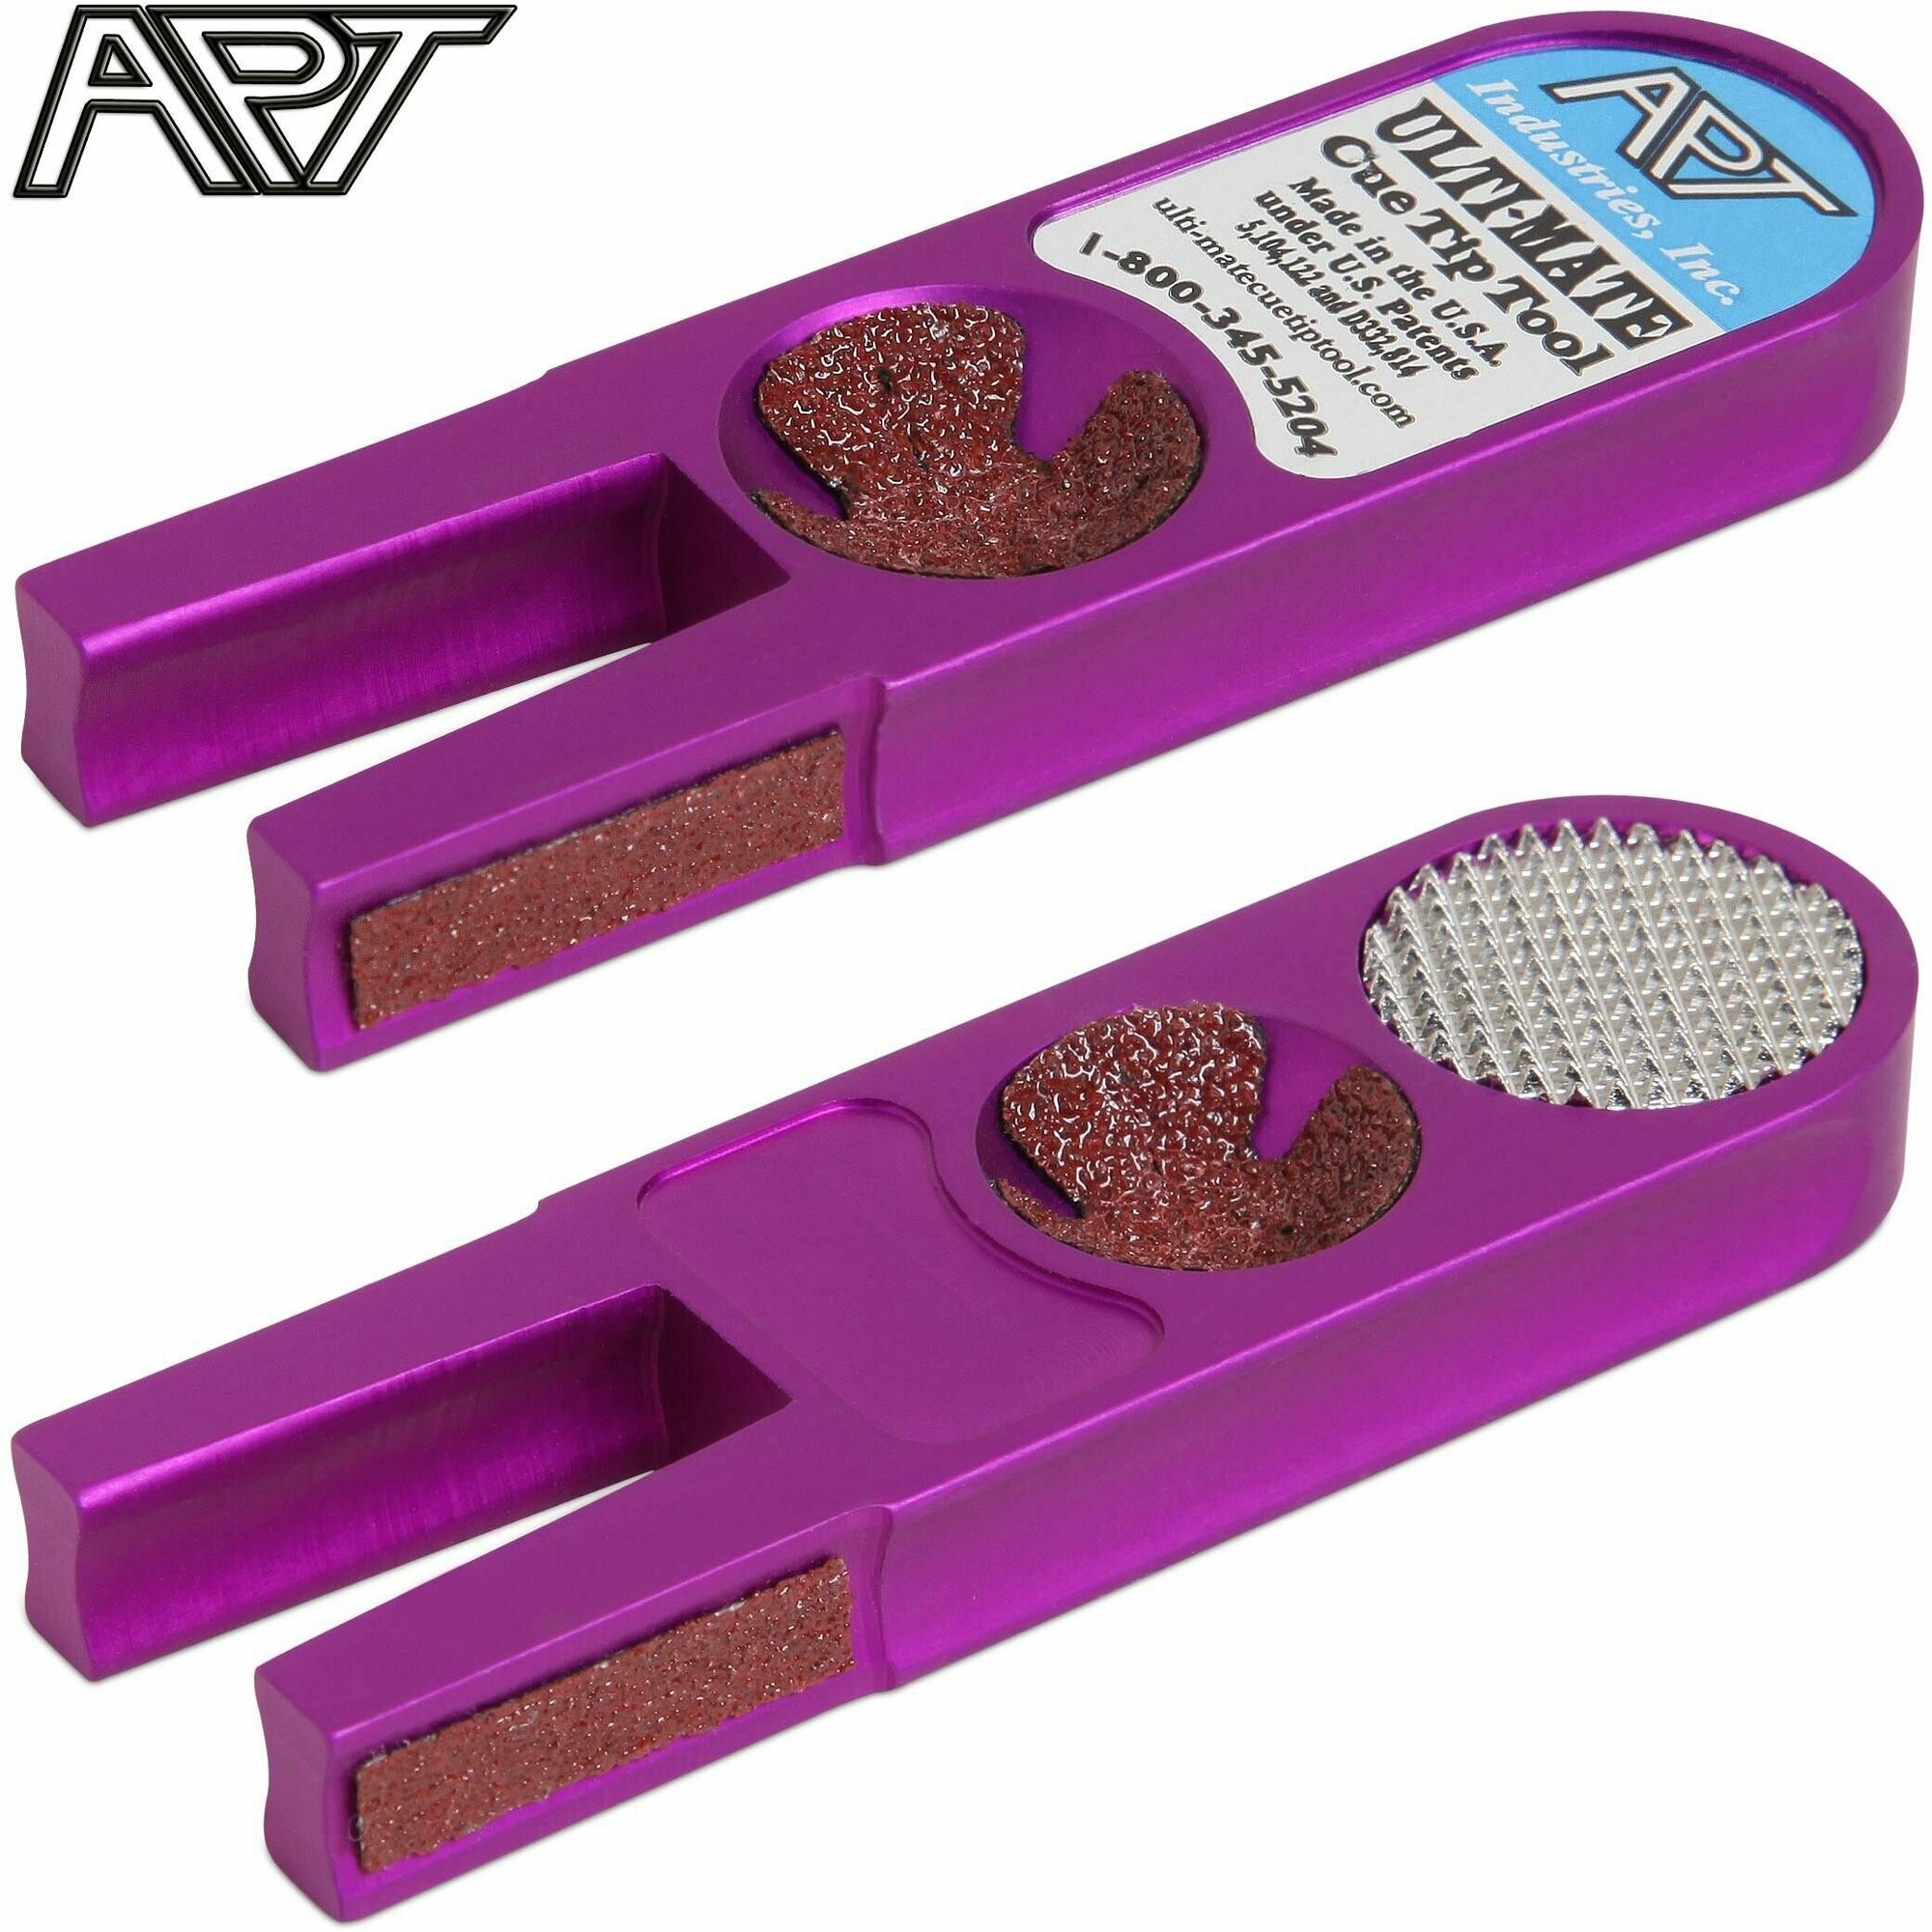 Инструмент для обработки наклейки на кий 5 в 1, фиолетовый / Ulti-Mate Cue Tip Tool Purple, 1 шт.